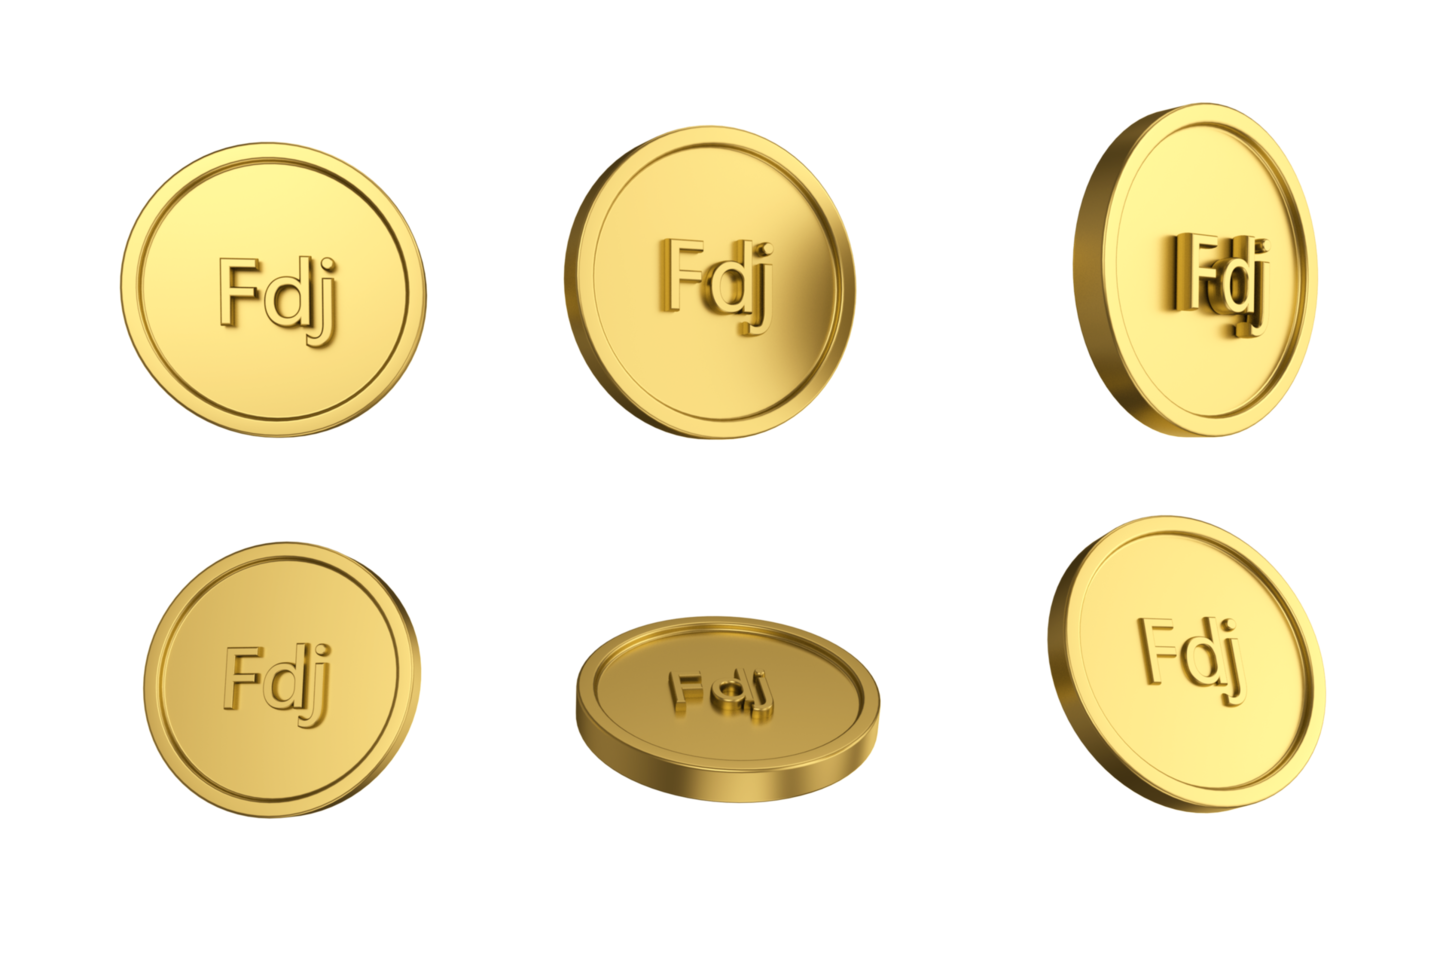 3d illustratie reeks van goud djiboutiaanse franc munt in verschillend engelen png